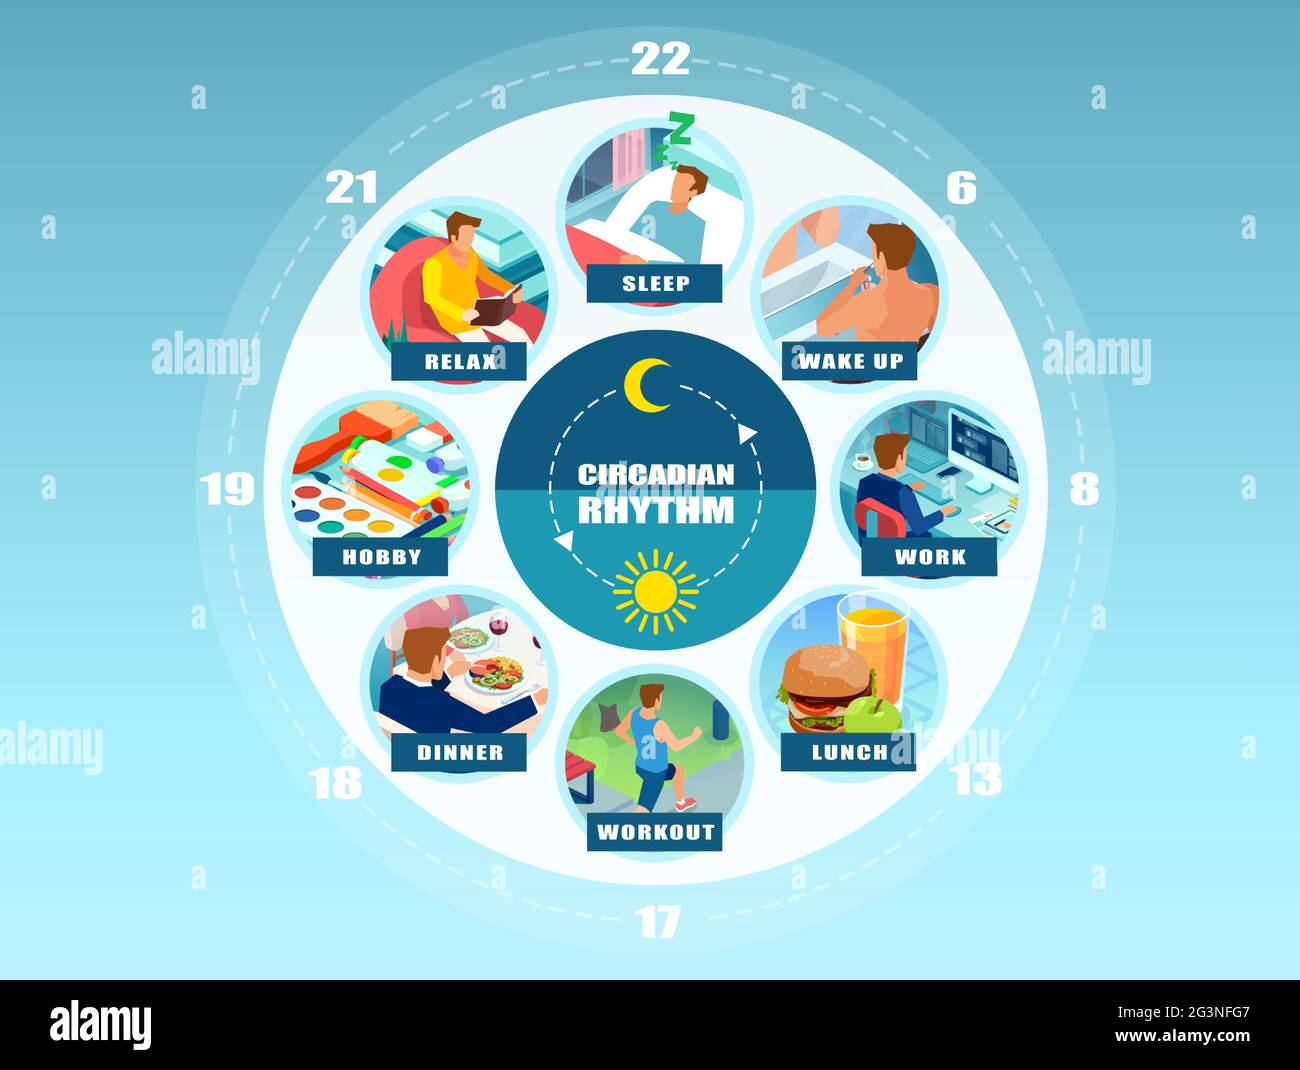 Infografica vettoriale di un ritmo circadiano e di una routine quotidiana di un giovane. Concetto di benessere Illustrazione Vettoriale